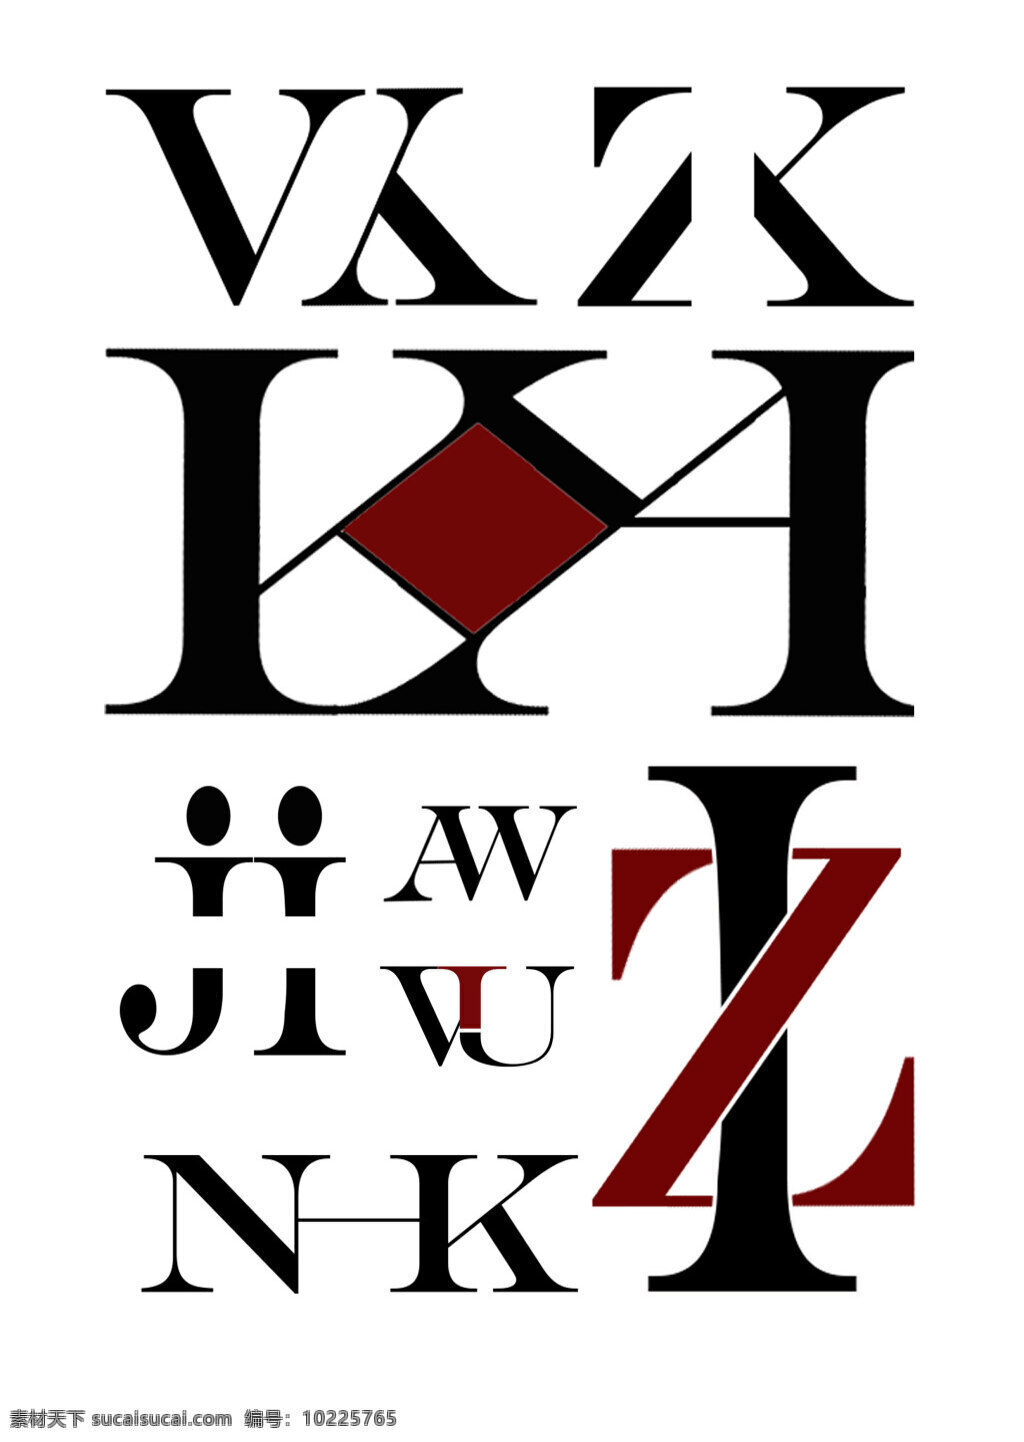 英文字母 字体设计 字体组合设计 优秀设计 优秀字体设计 英文字母设计